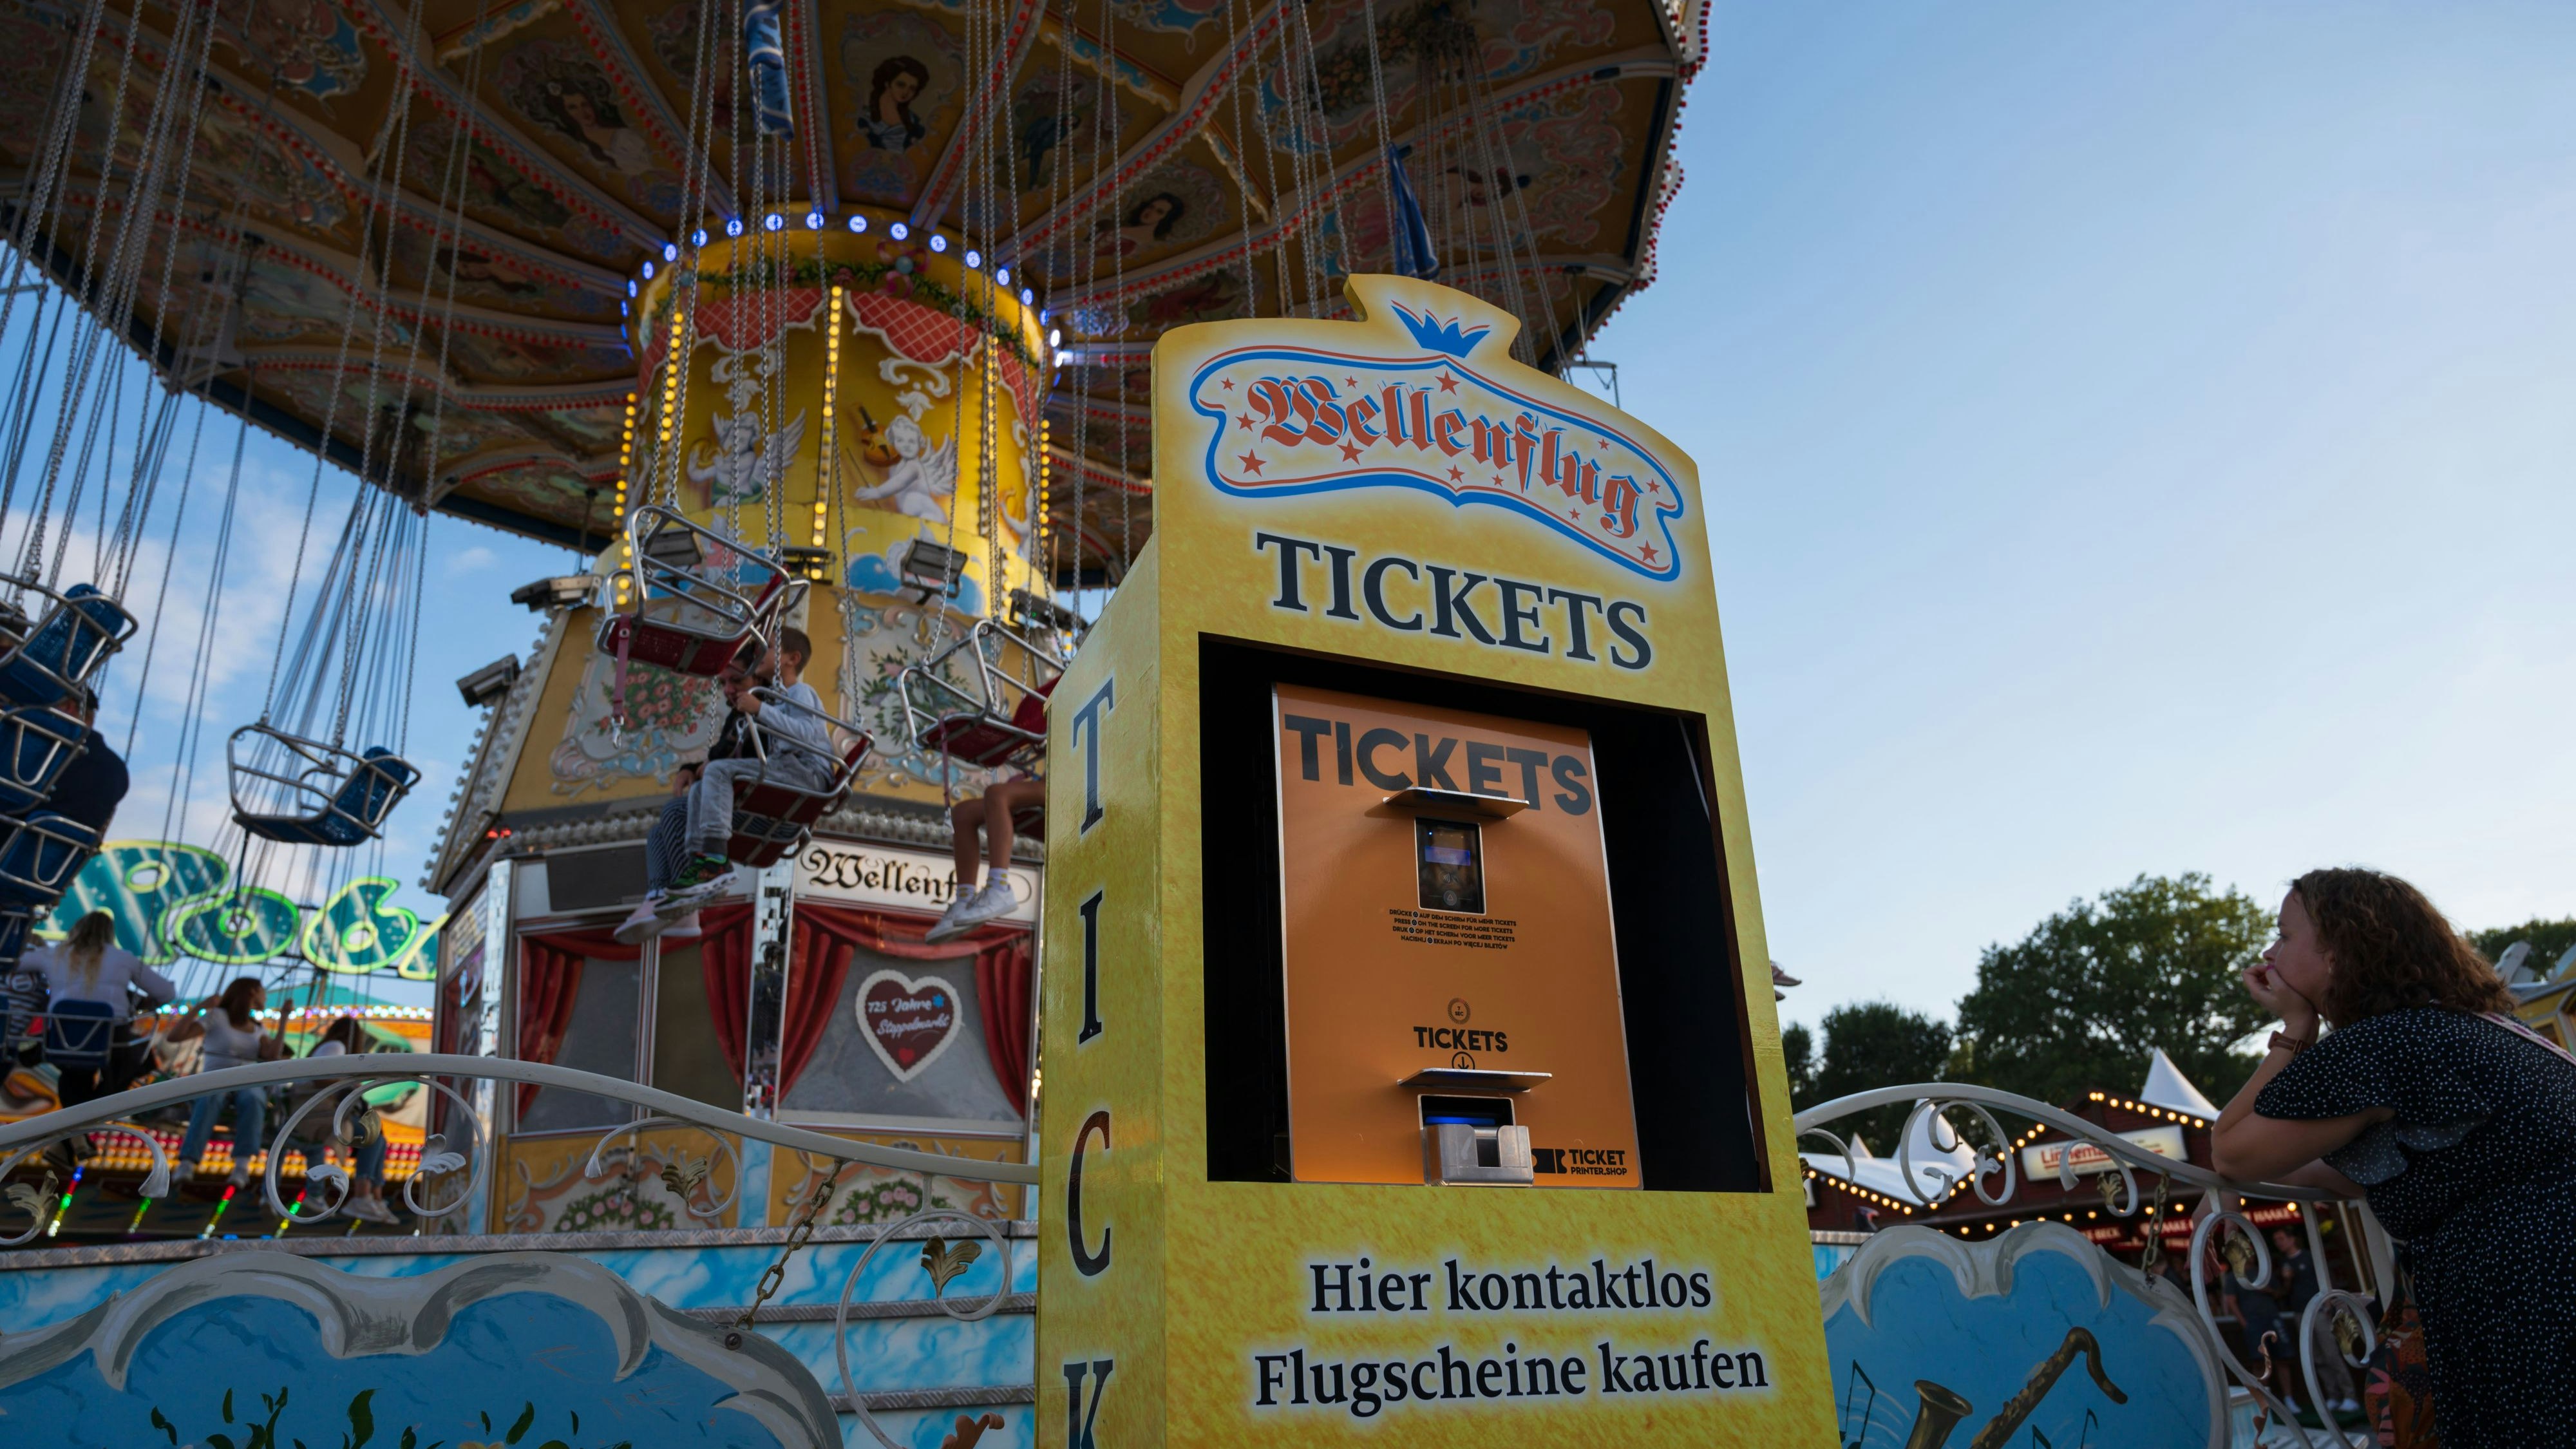 Tickets ohne Bargeld? Auf dem Stoppelmarkt ist das in diesem Jahr erstmals möglich beim Kettenkarussell "Wellenflug". Foto: J. Scholz